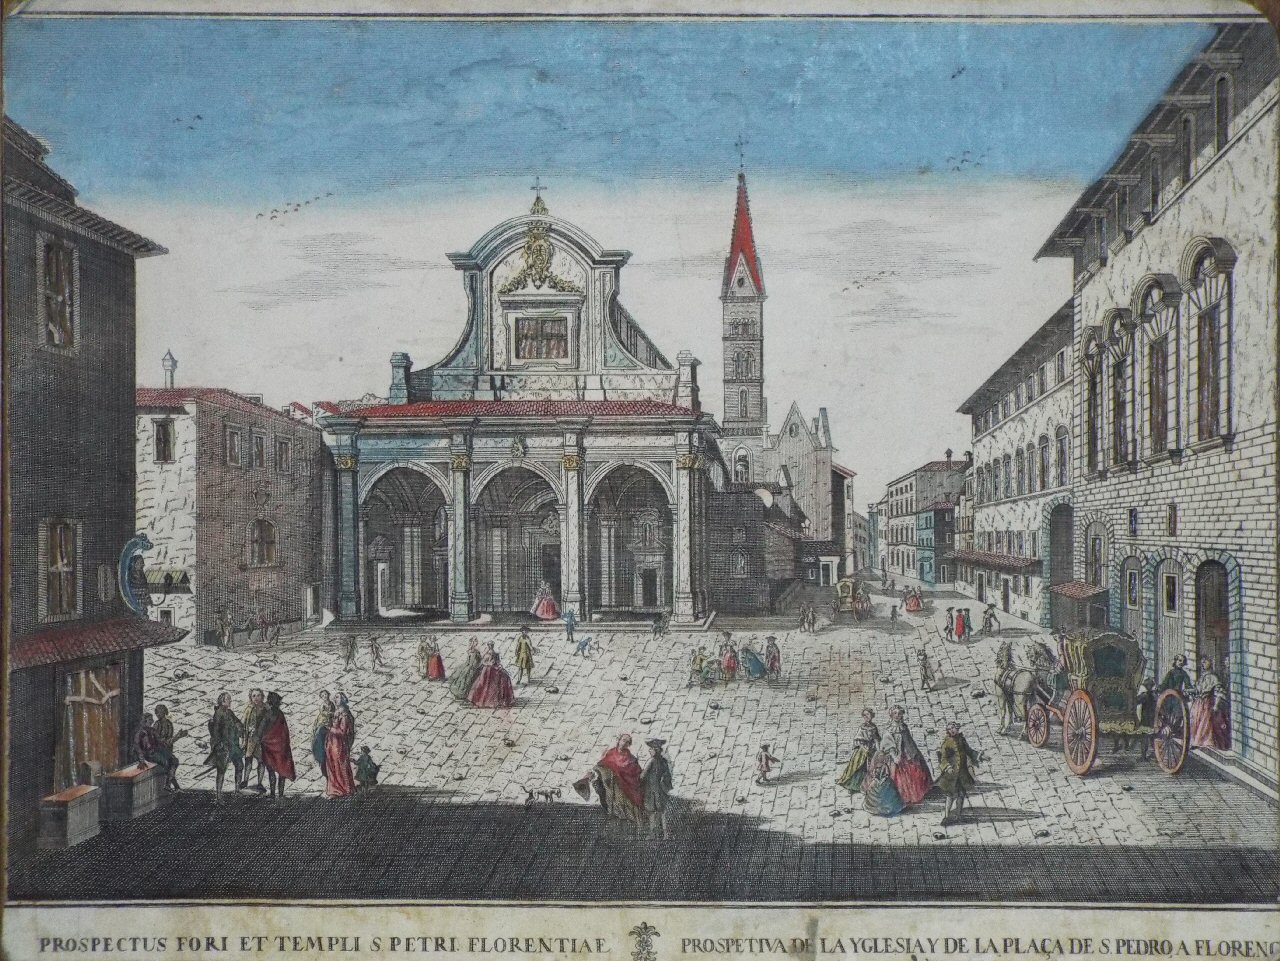 Print - Prospectus Fori et Templi S Petri Florentiae Prospetiva de la Yglesiay de la Placa S. Pedro, a Florence